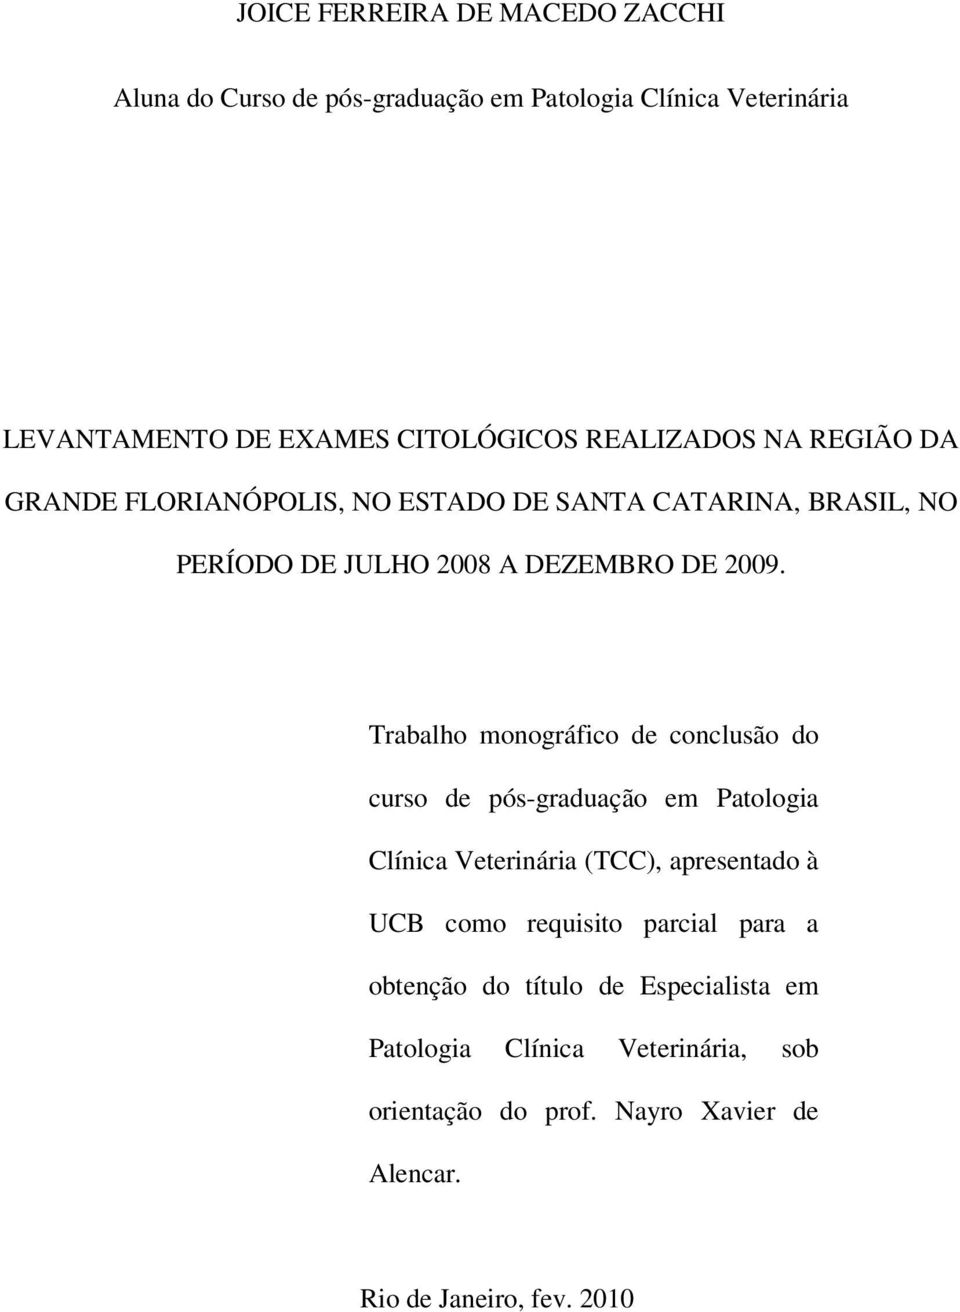 Trabalho monográfico de conclusão do curso de pós-graduação em Patologia Clínica Veterinária (TCC), apresentado à UCB como requisito